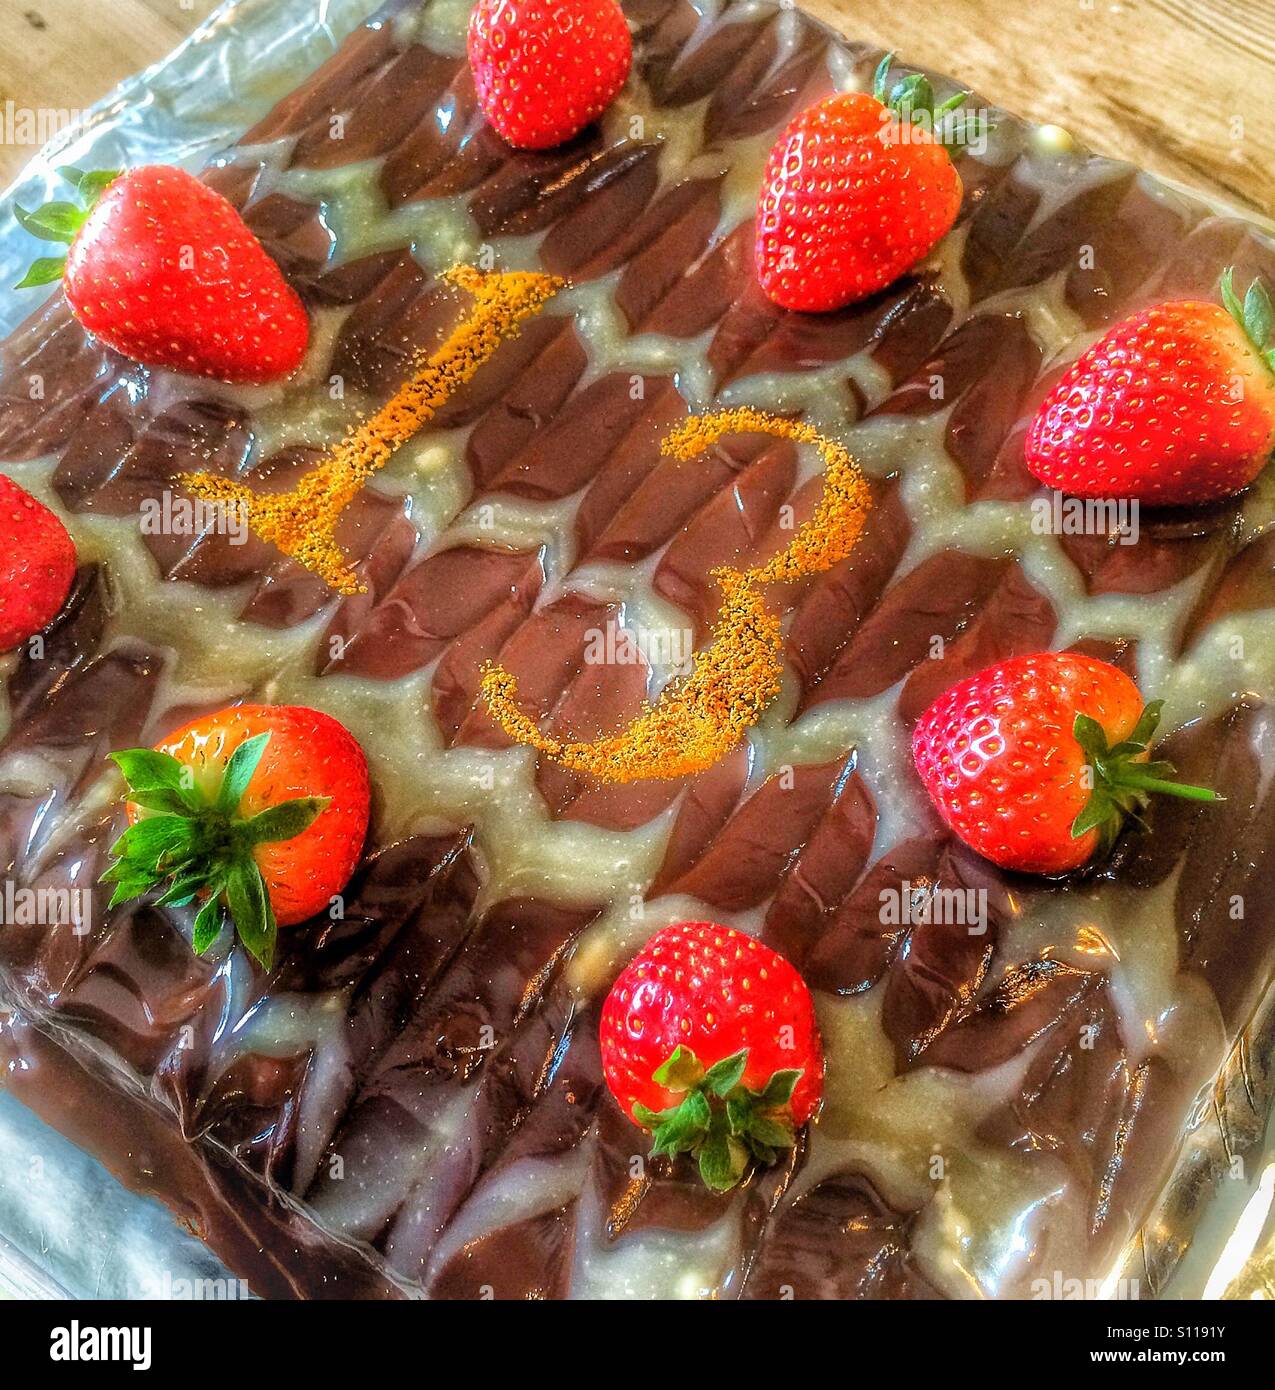 Chocolate and strawberry birthday cake. Stock Photo